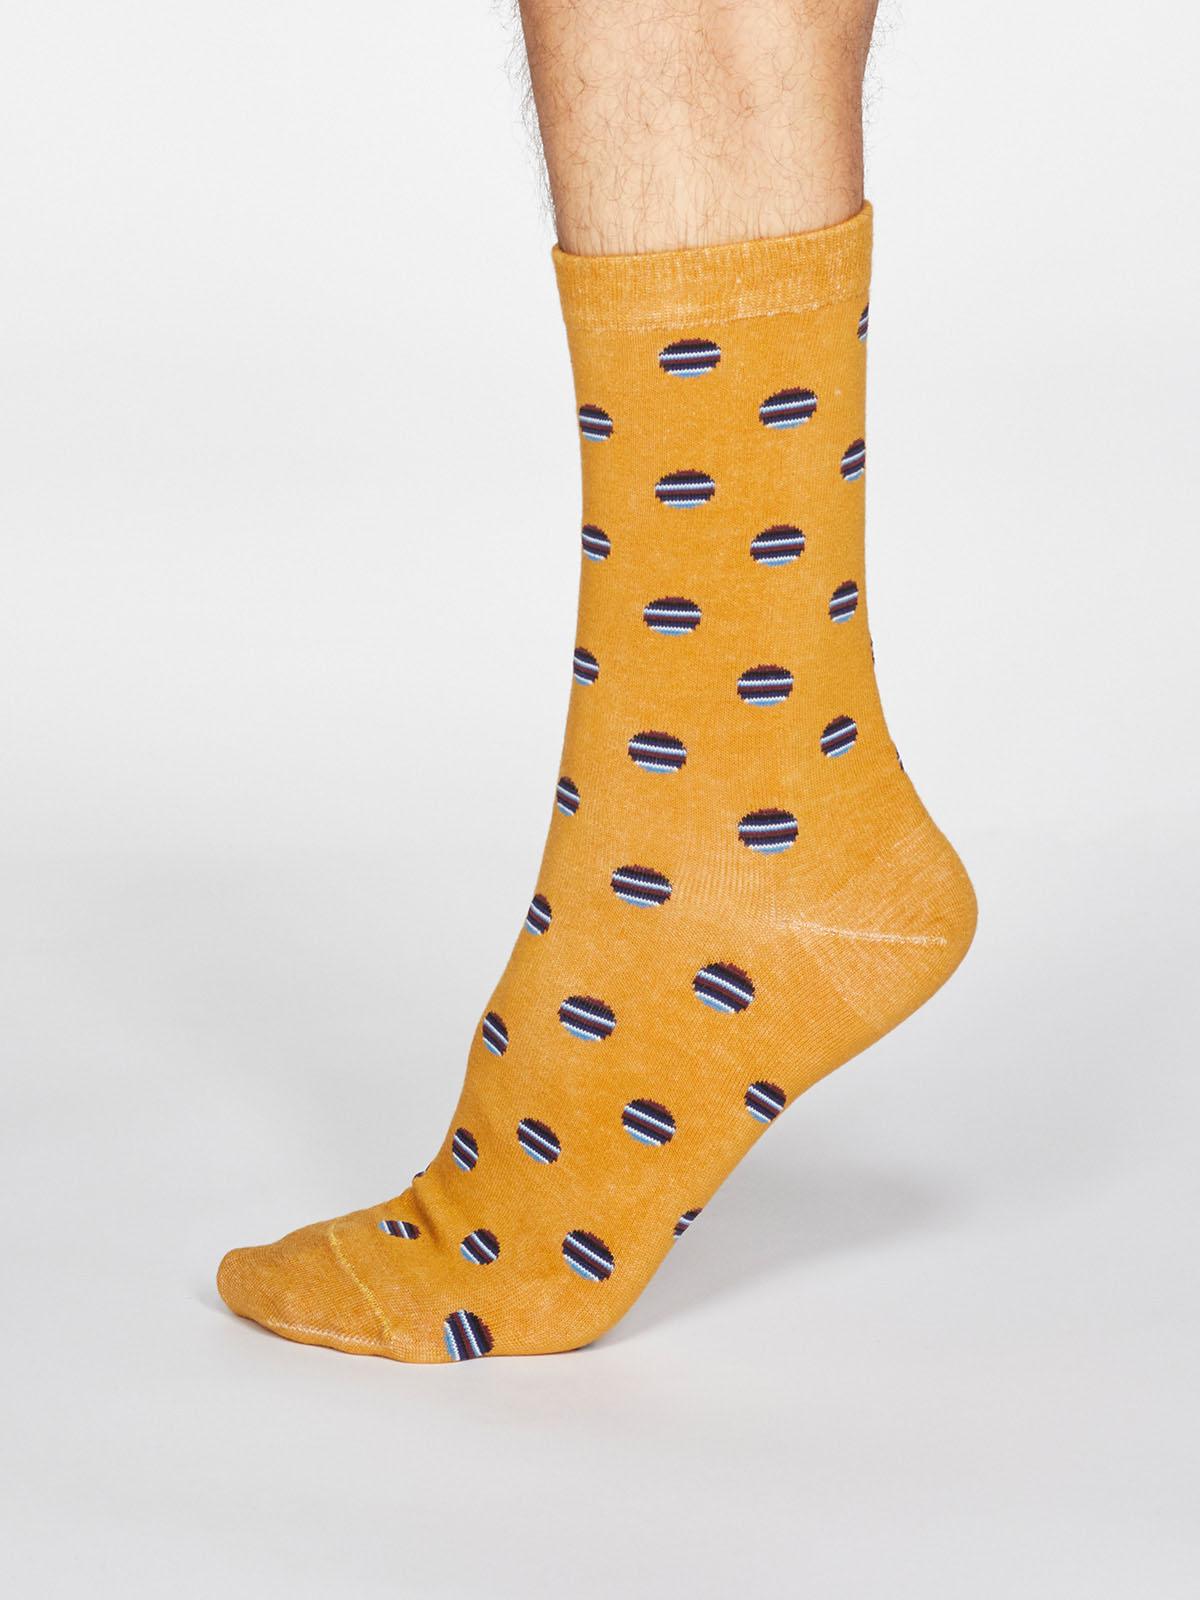 Grayson Spot Stripe Socks - Mustard Yellow - Thought Clothing UK